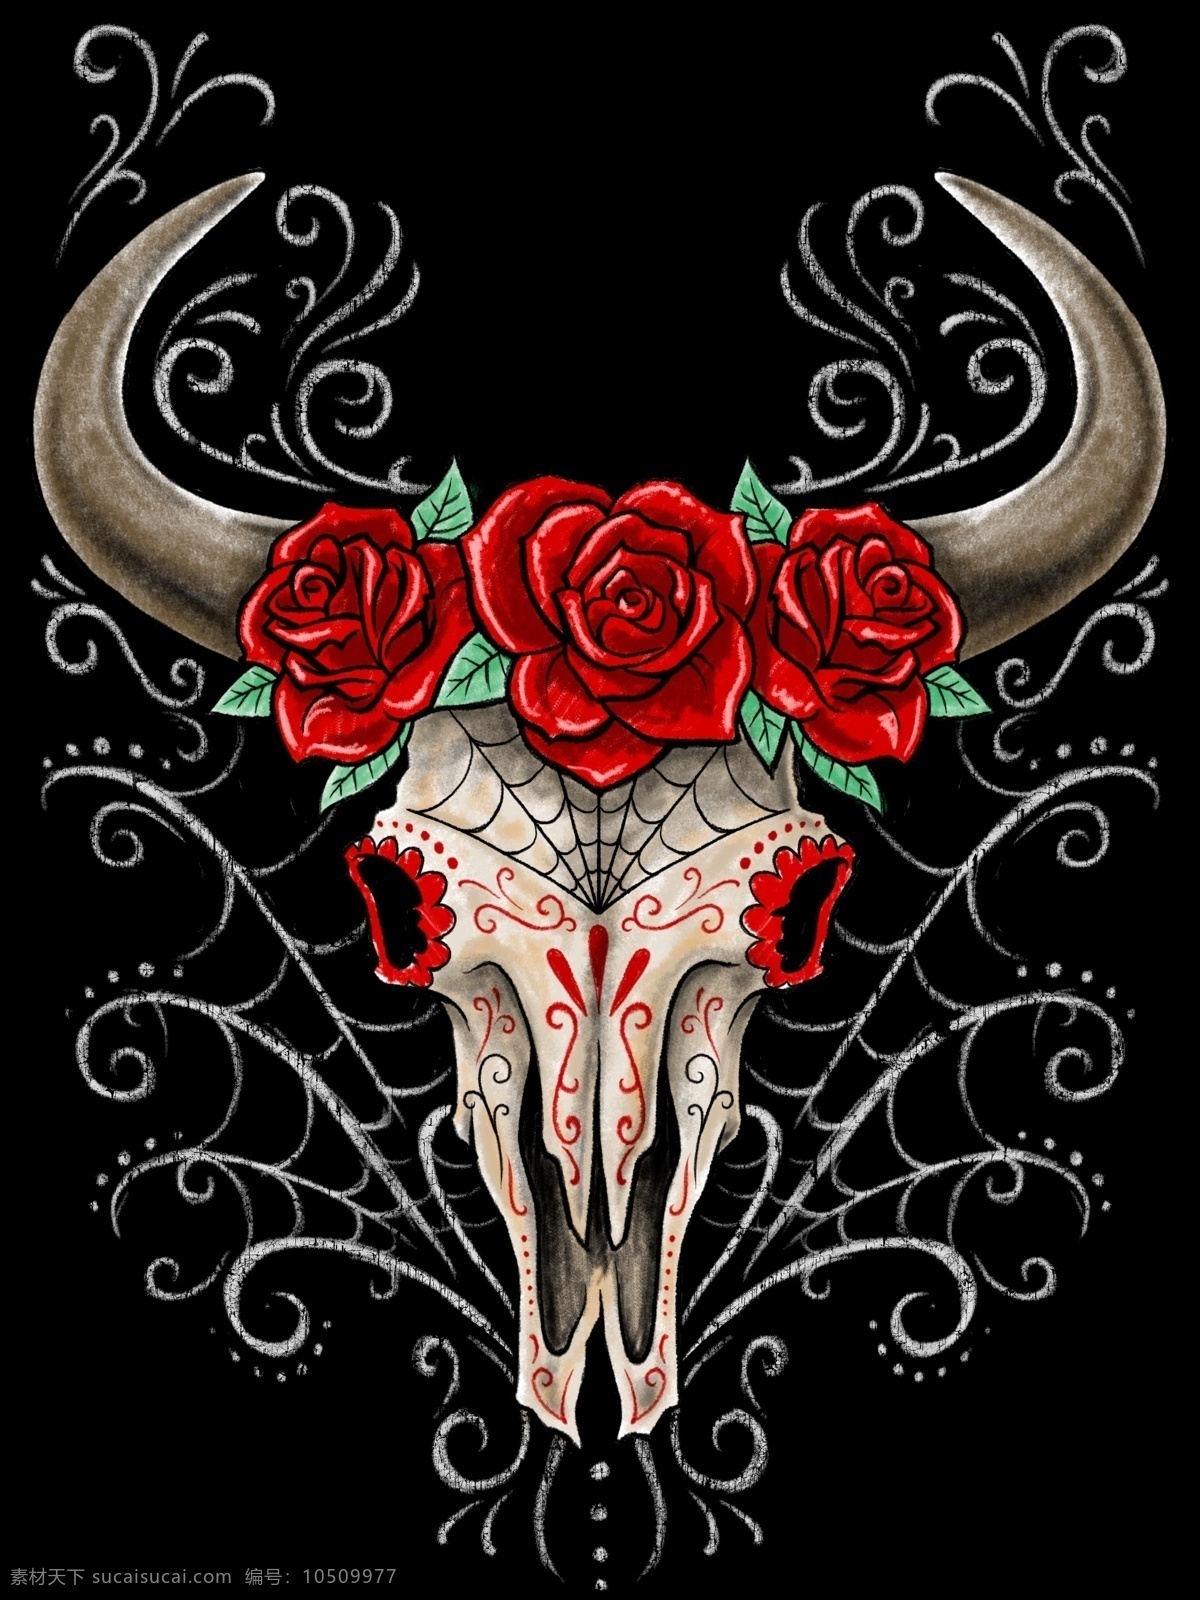 玫瑰 骷髅 羊头 牛头 犄角 魔鬼 花 印花 底纹 花纹 文化艺术 传统文化